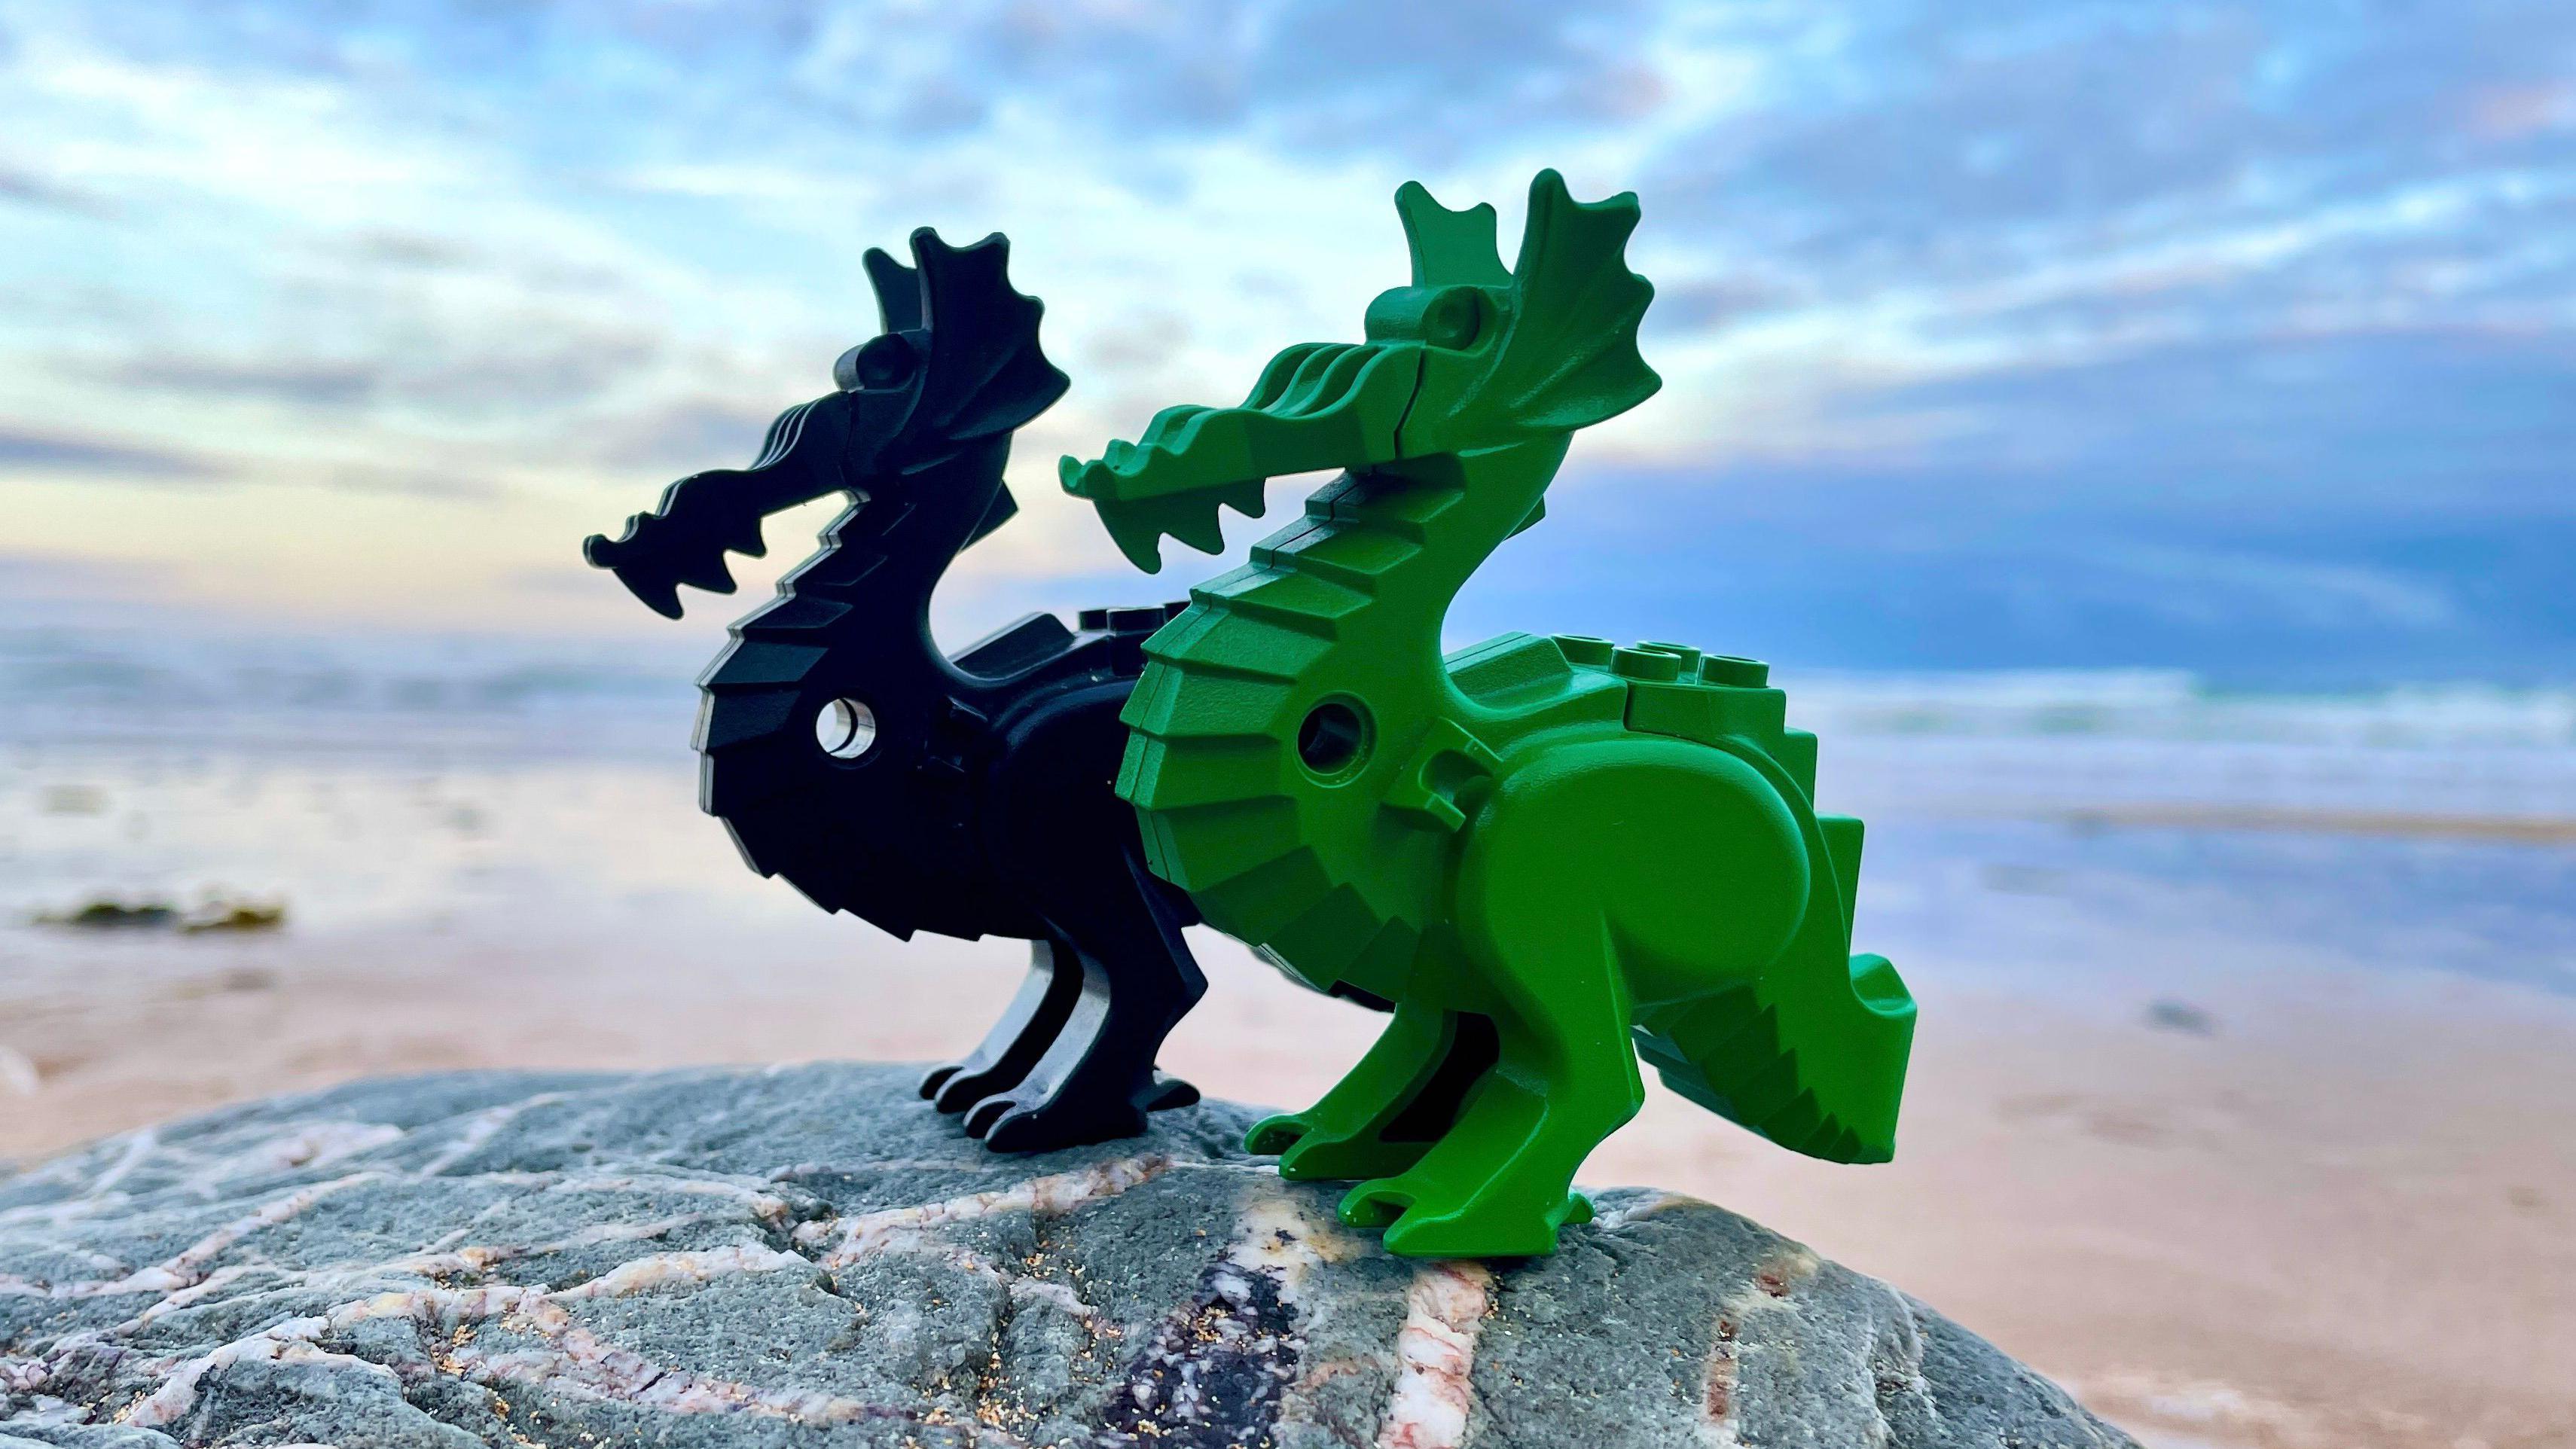 Los dragones verdes son unas de las piezas más raras de todas las que han  aparecido en las playas de Cornualles.
Tracy Williams